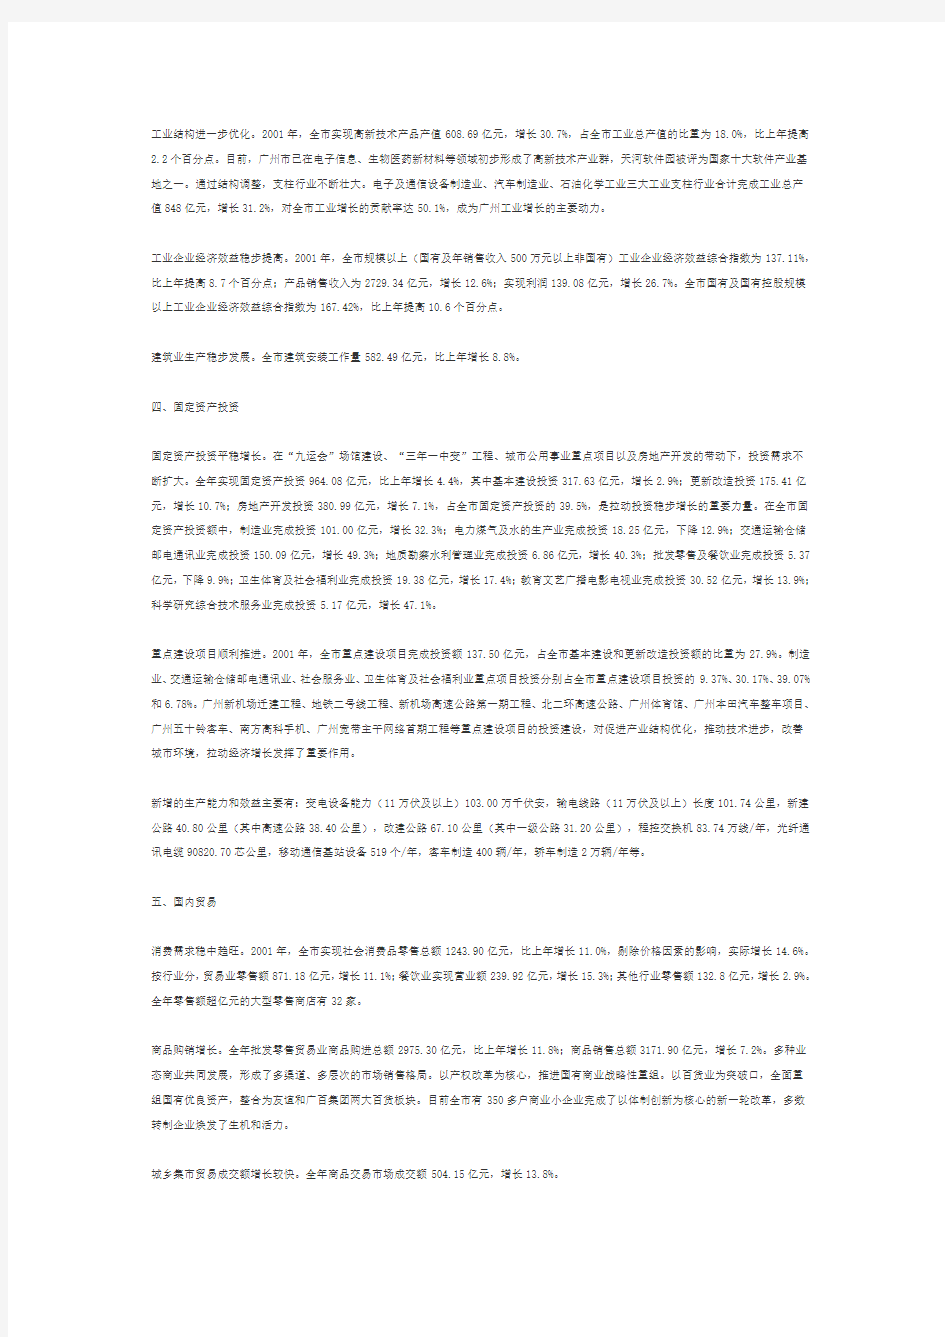 广州市2001年国民经济和社会发展统计公报